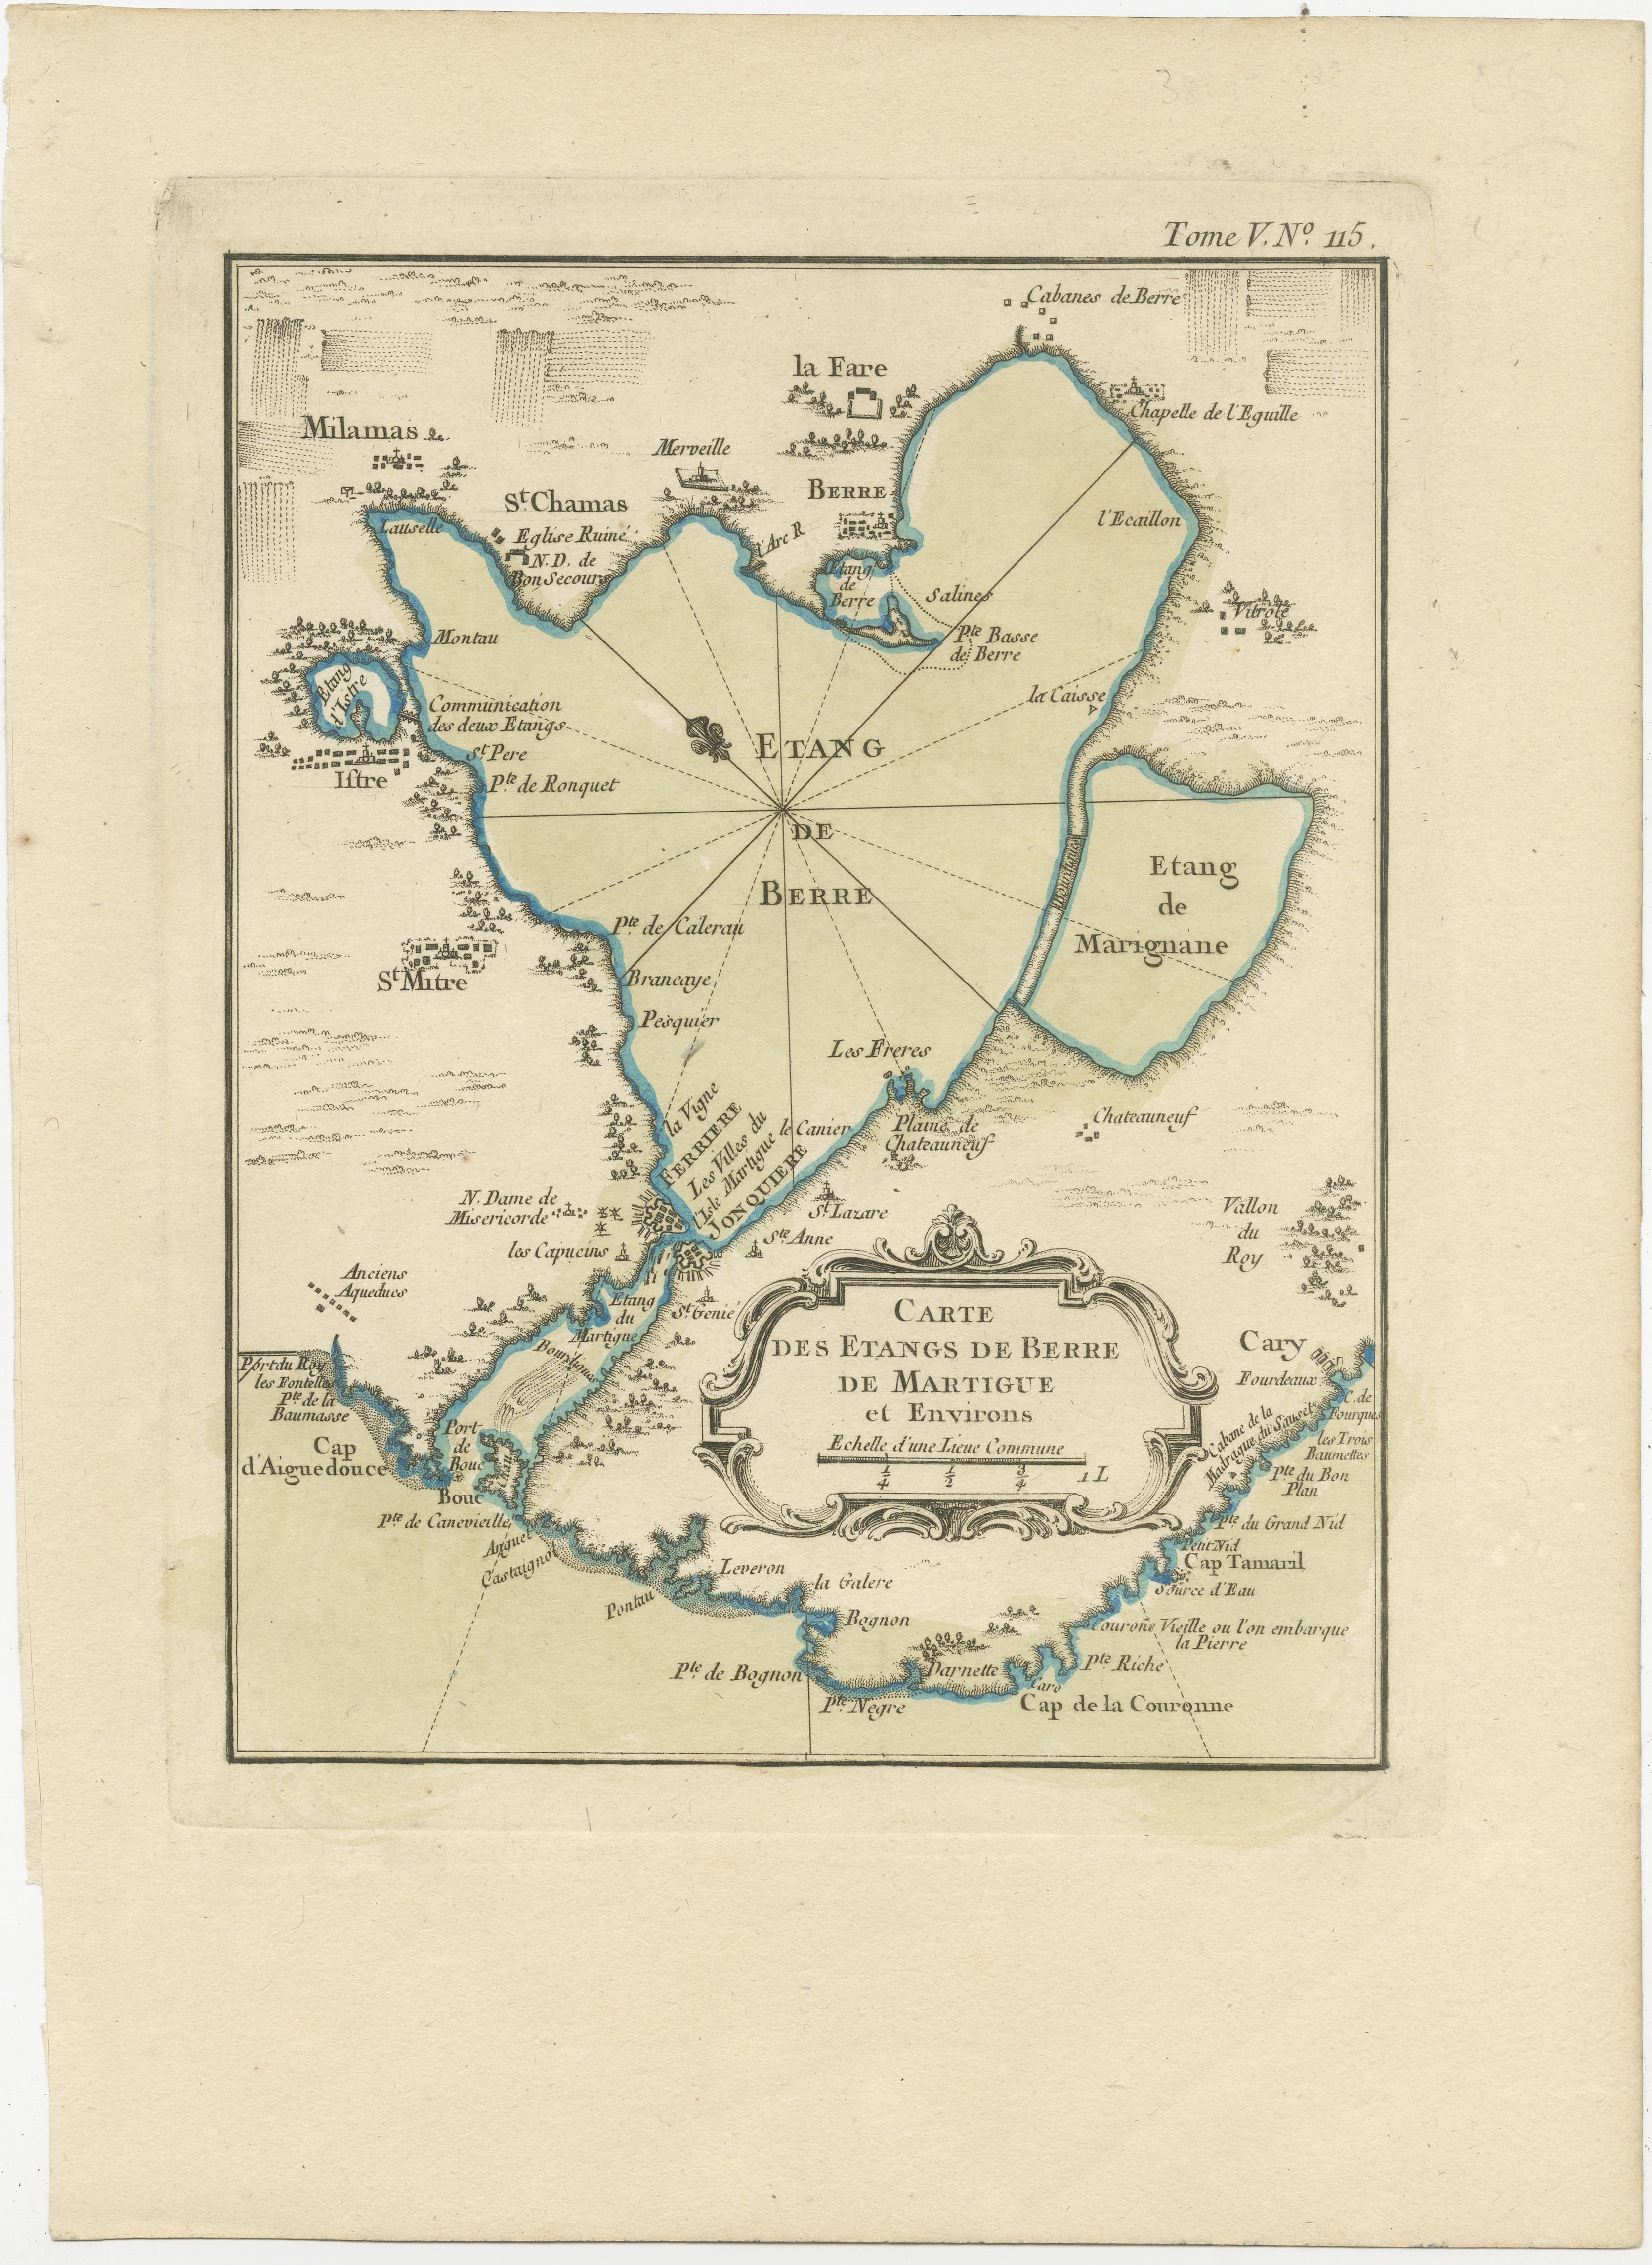 Antique map titled 'Carte des etangs de Berre de Martigue et environs'. Original map of the region of Berre-l'Étang, France. This map originates from 'Le Petit Atlas Maritime (..)' by J.N. Bellin. Published 1764. 

Bellin was an important maker of